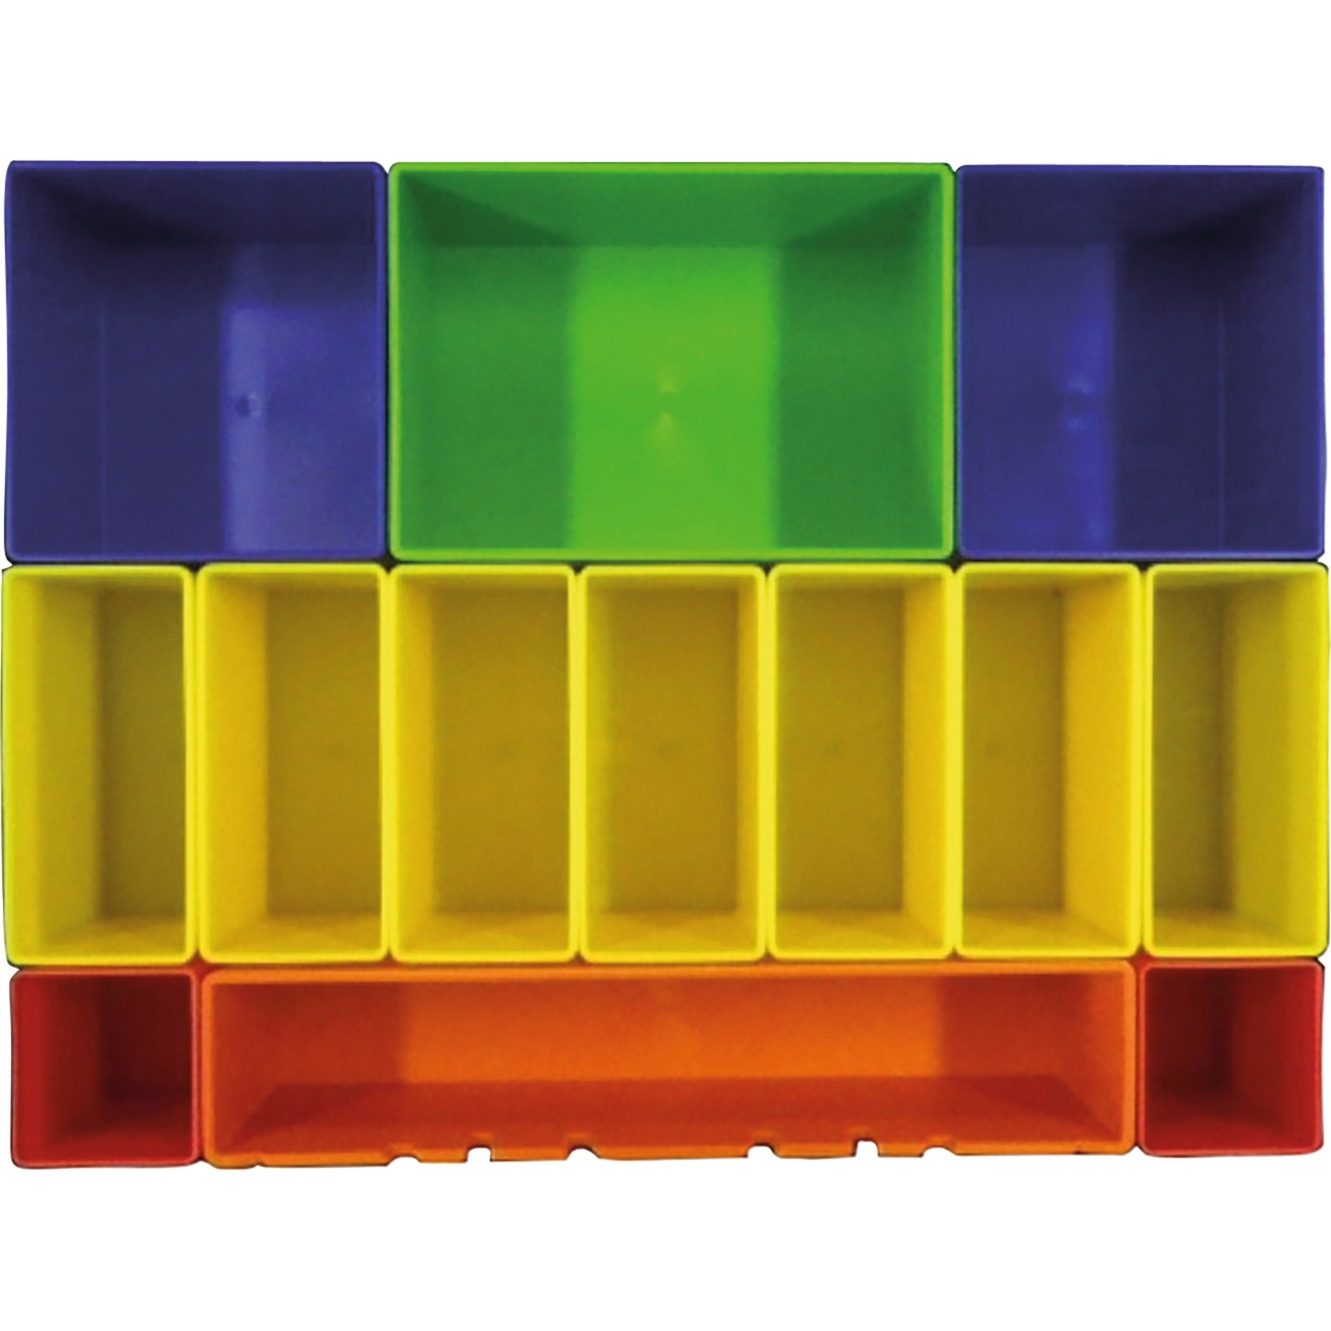 Image of Alternate - Boxeneinsatz mit farbigen Boxen P-83652, Einlage online einkaufen bei Alternate